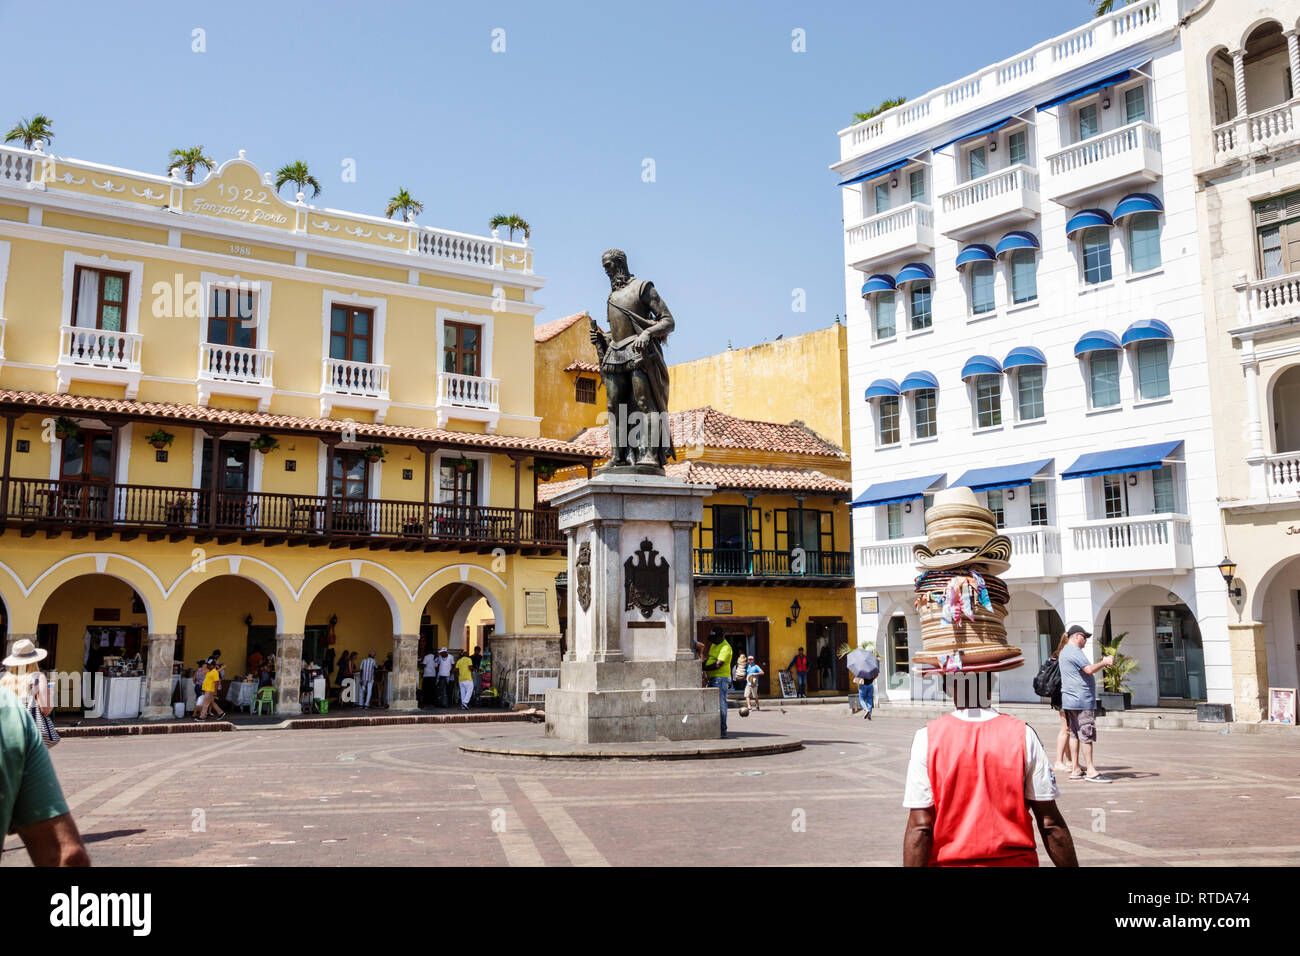 Cartagena Kolumbien, Einwohner Hispanos, Plaza de los Coches, öffentlicher Platz, Statue, Stadtgründer, Don Pedro de Heredia, spanische Eroberer Stockfoto